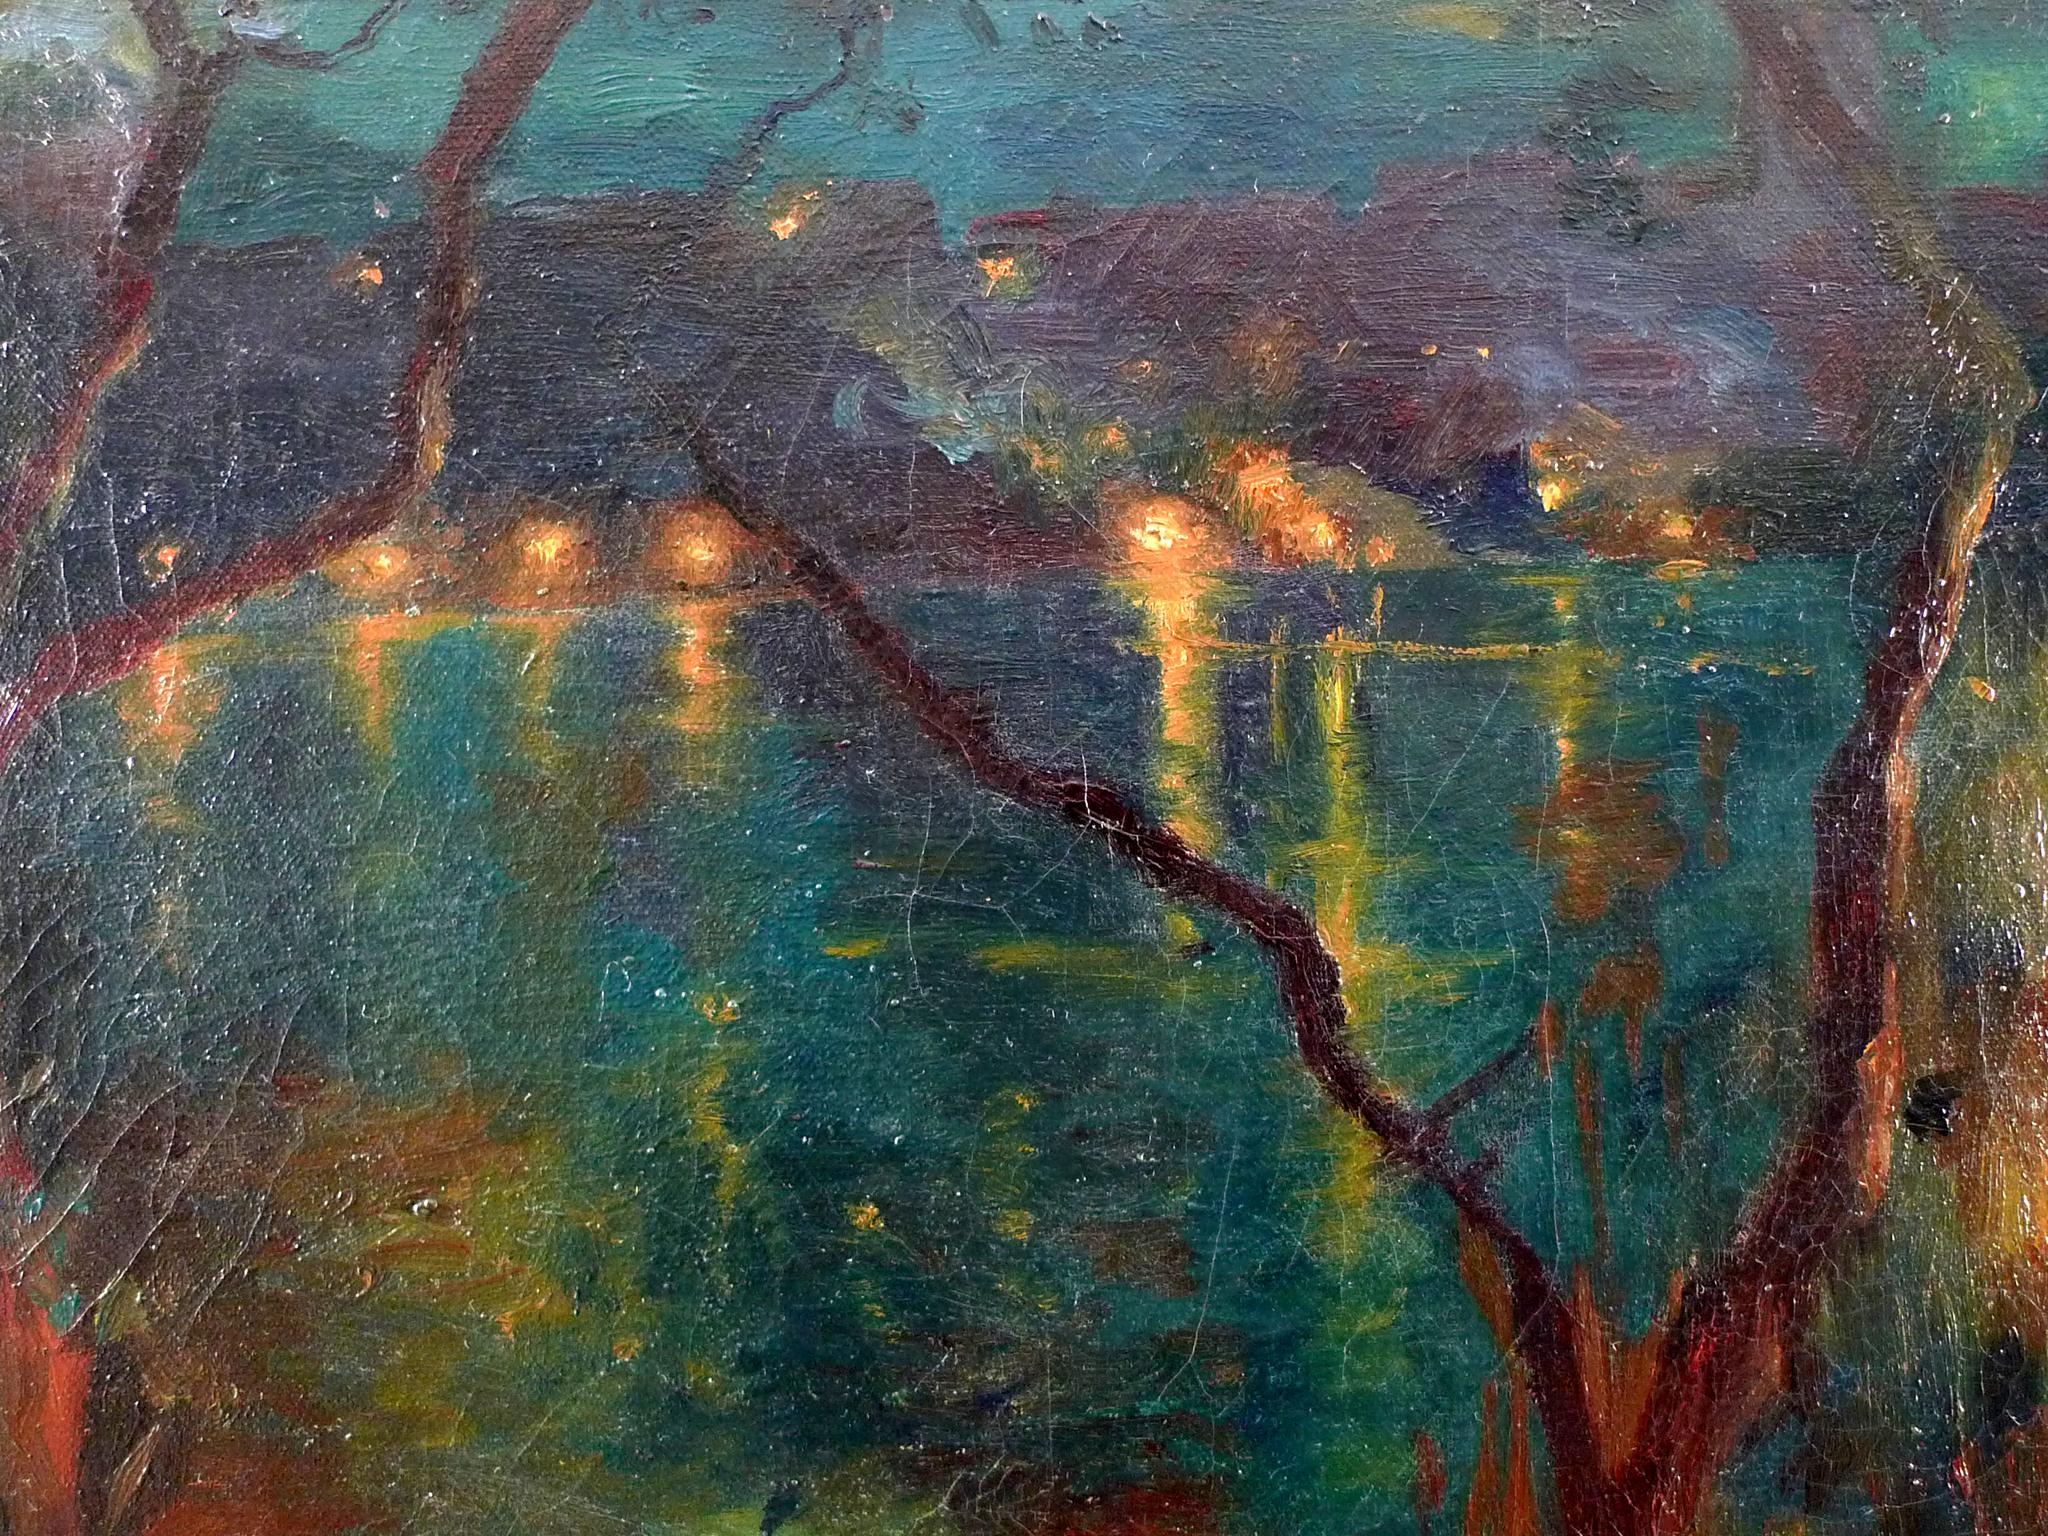 « Scène de rivière illuminée », huile sur toile de Luis Graner y Arrufi, début du 20e siècle  - Réalisme Painting par Luis Graner Y Arrufi